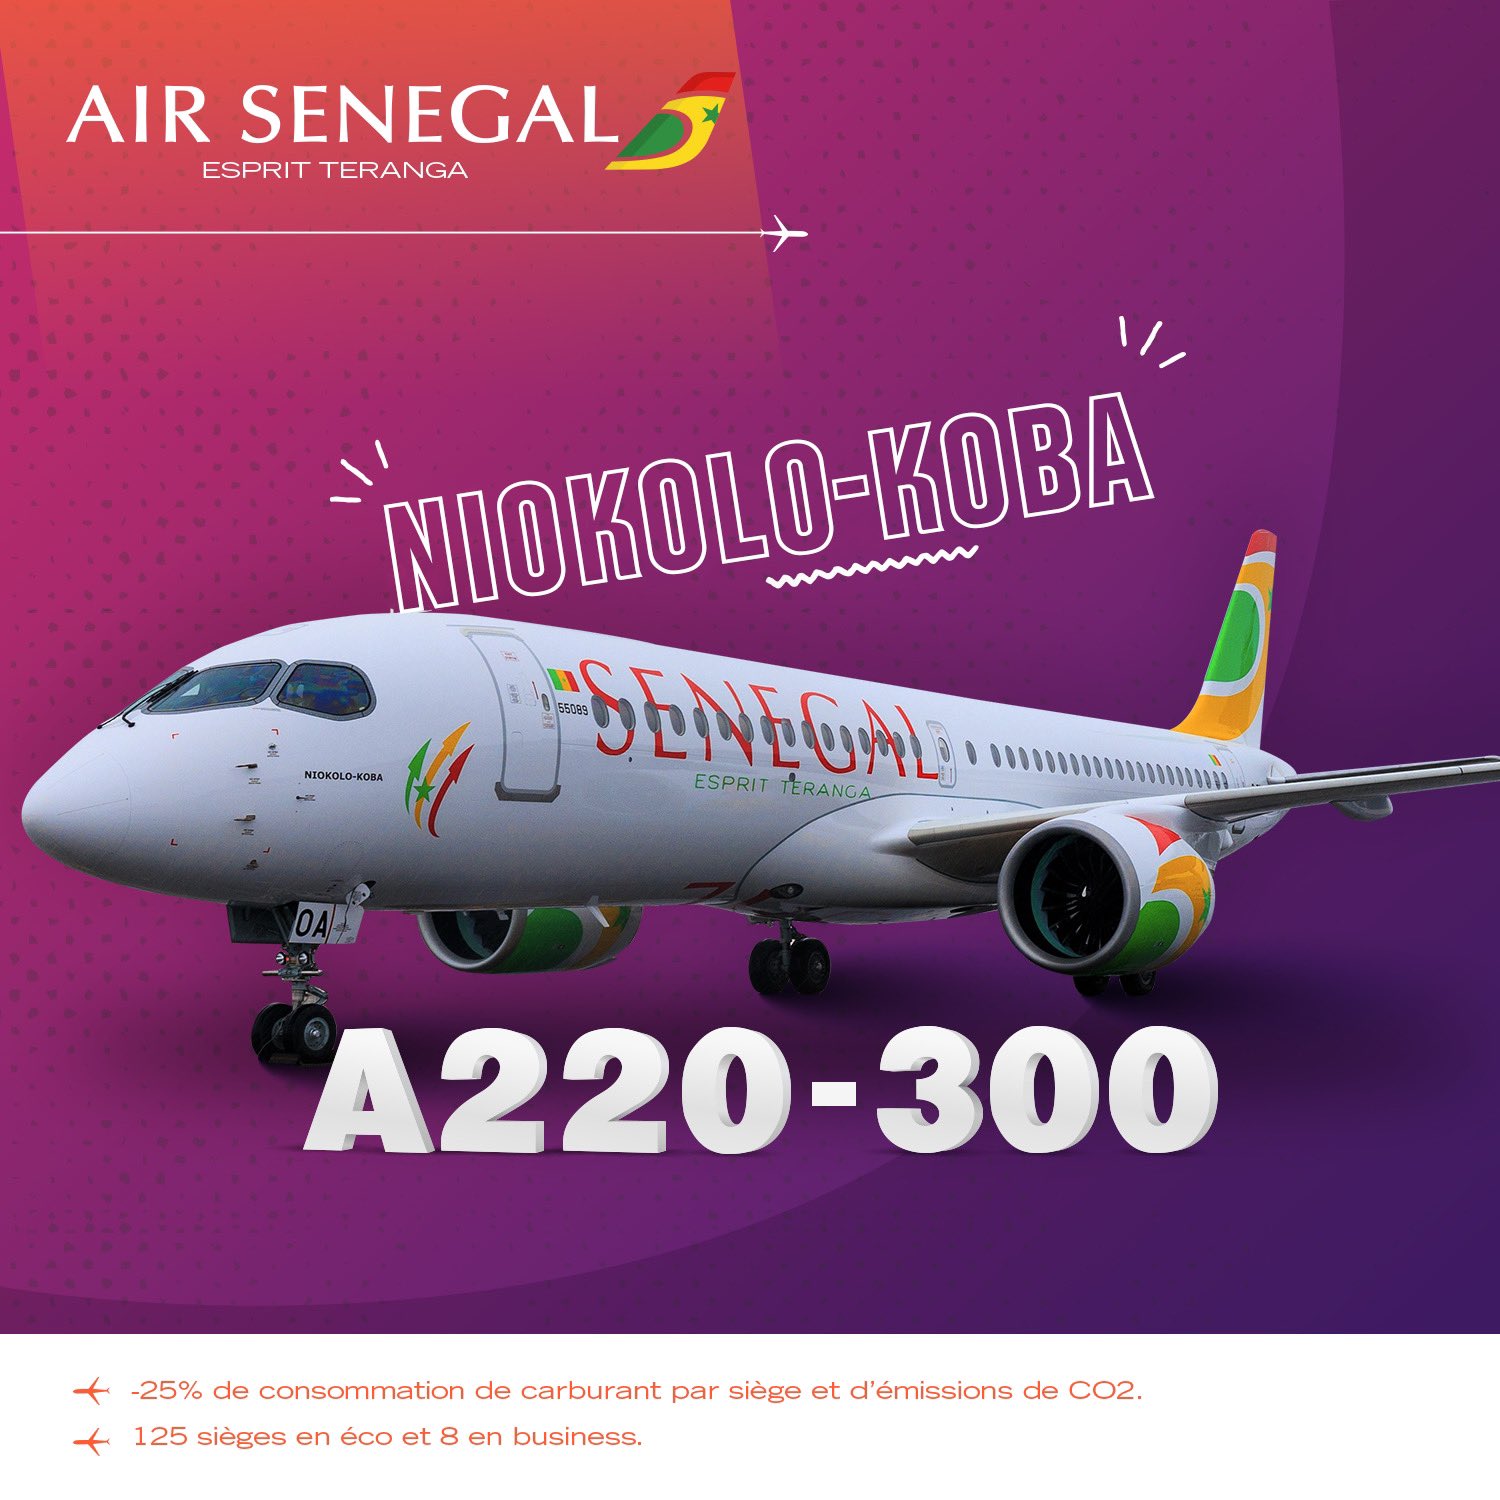 Air Sénégal réceptionne un nouvel A220-300